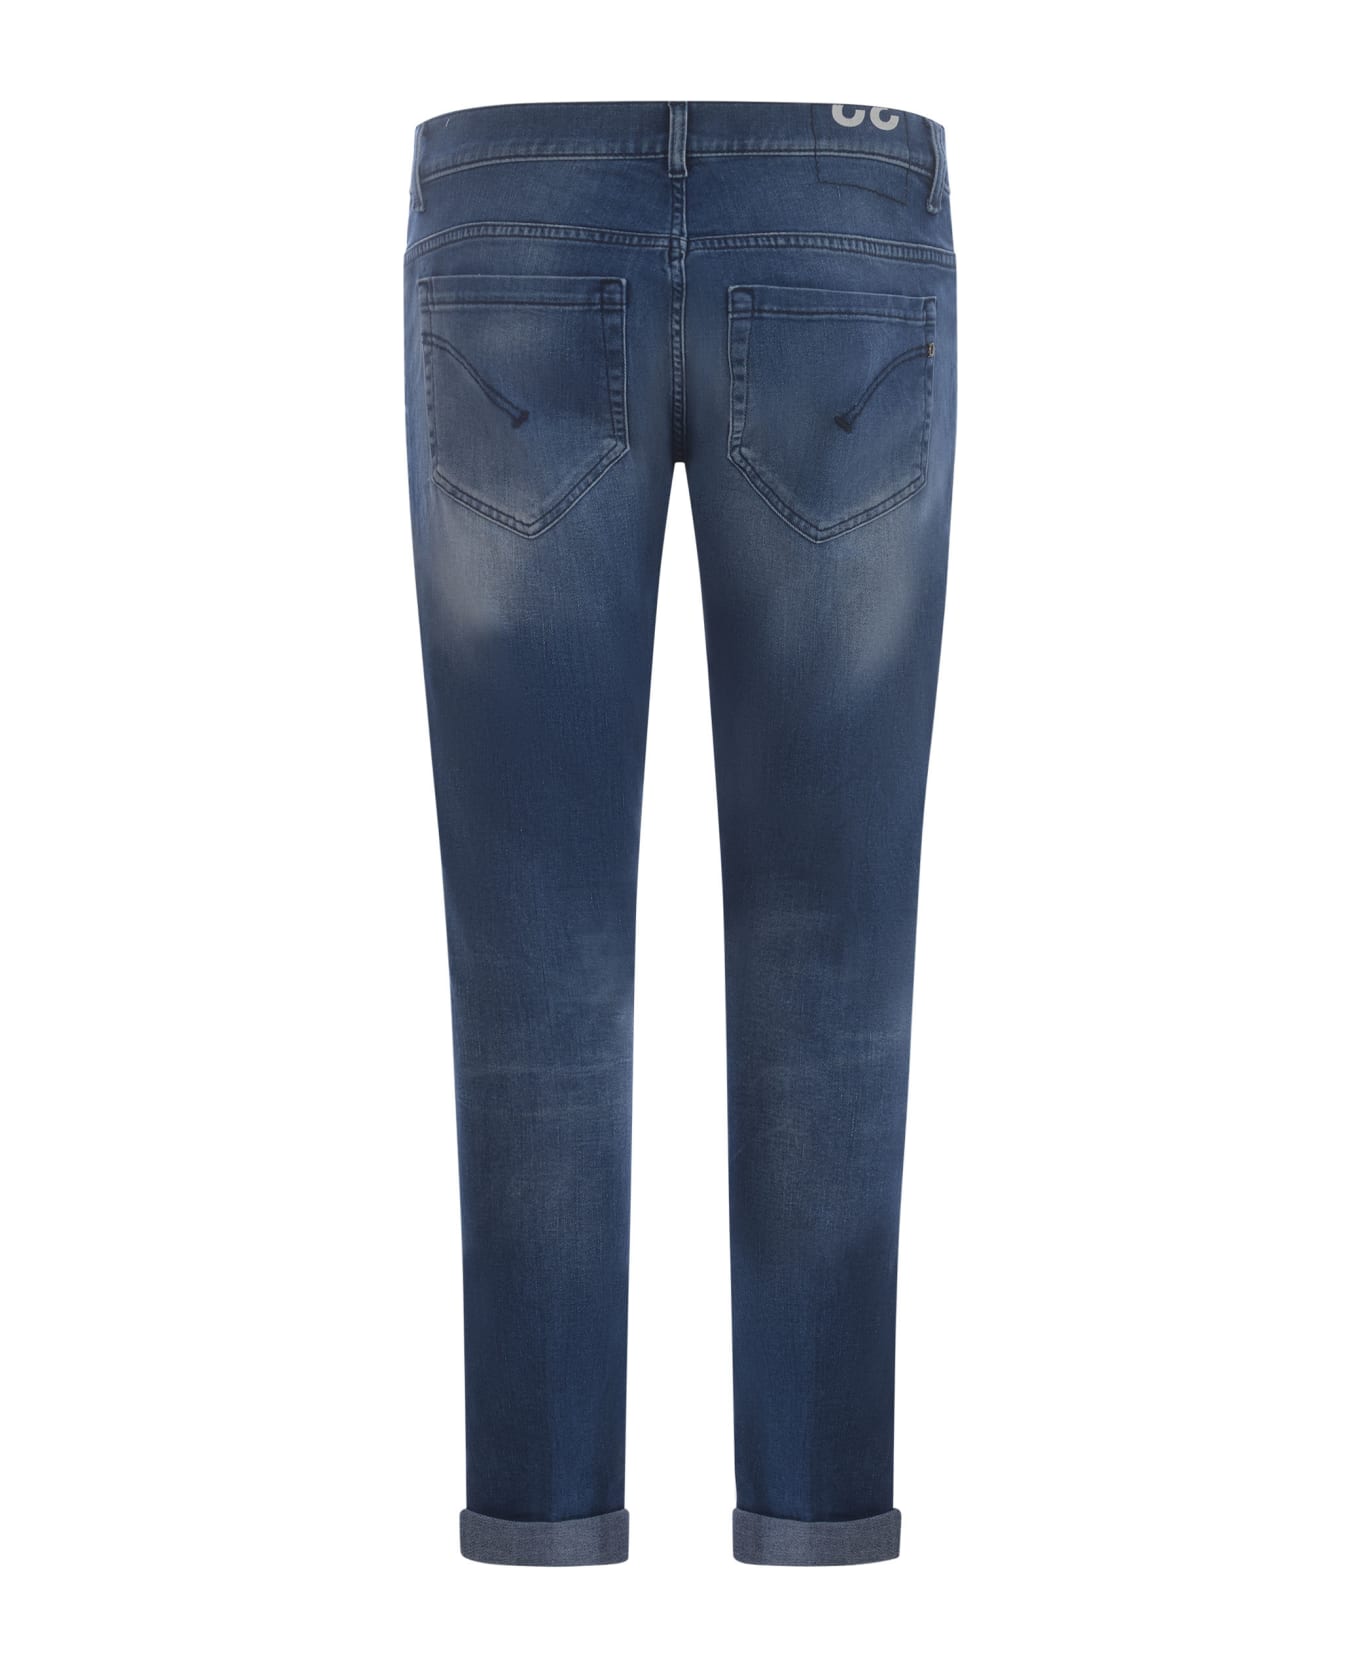 Dondup George Skinny Jeans In Medium Blue Stretch Denim - Blue